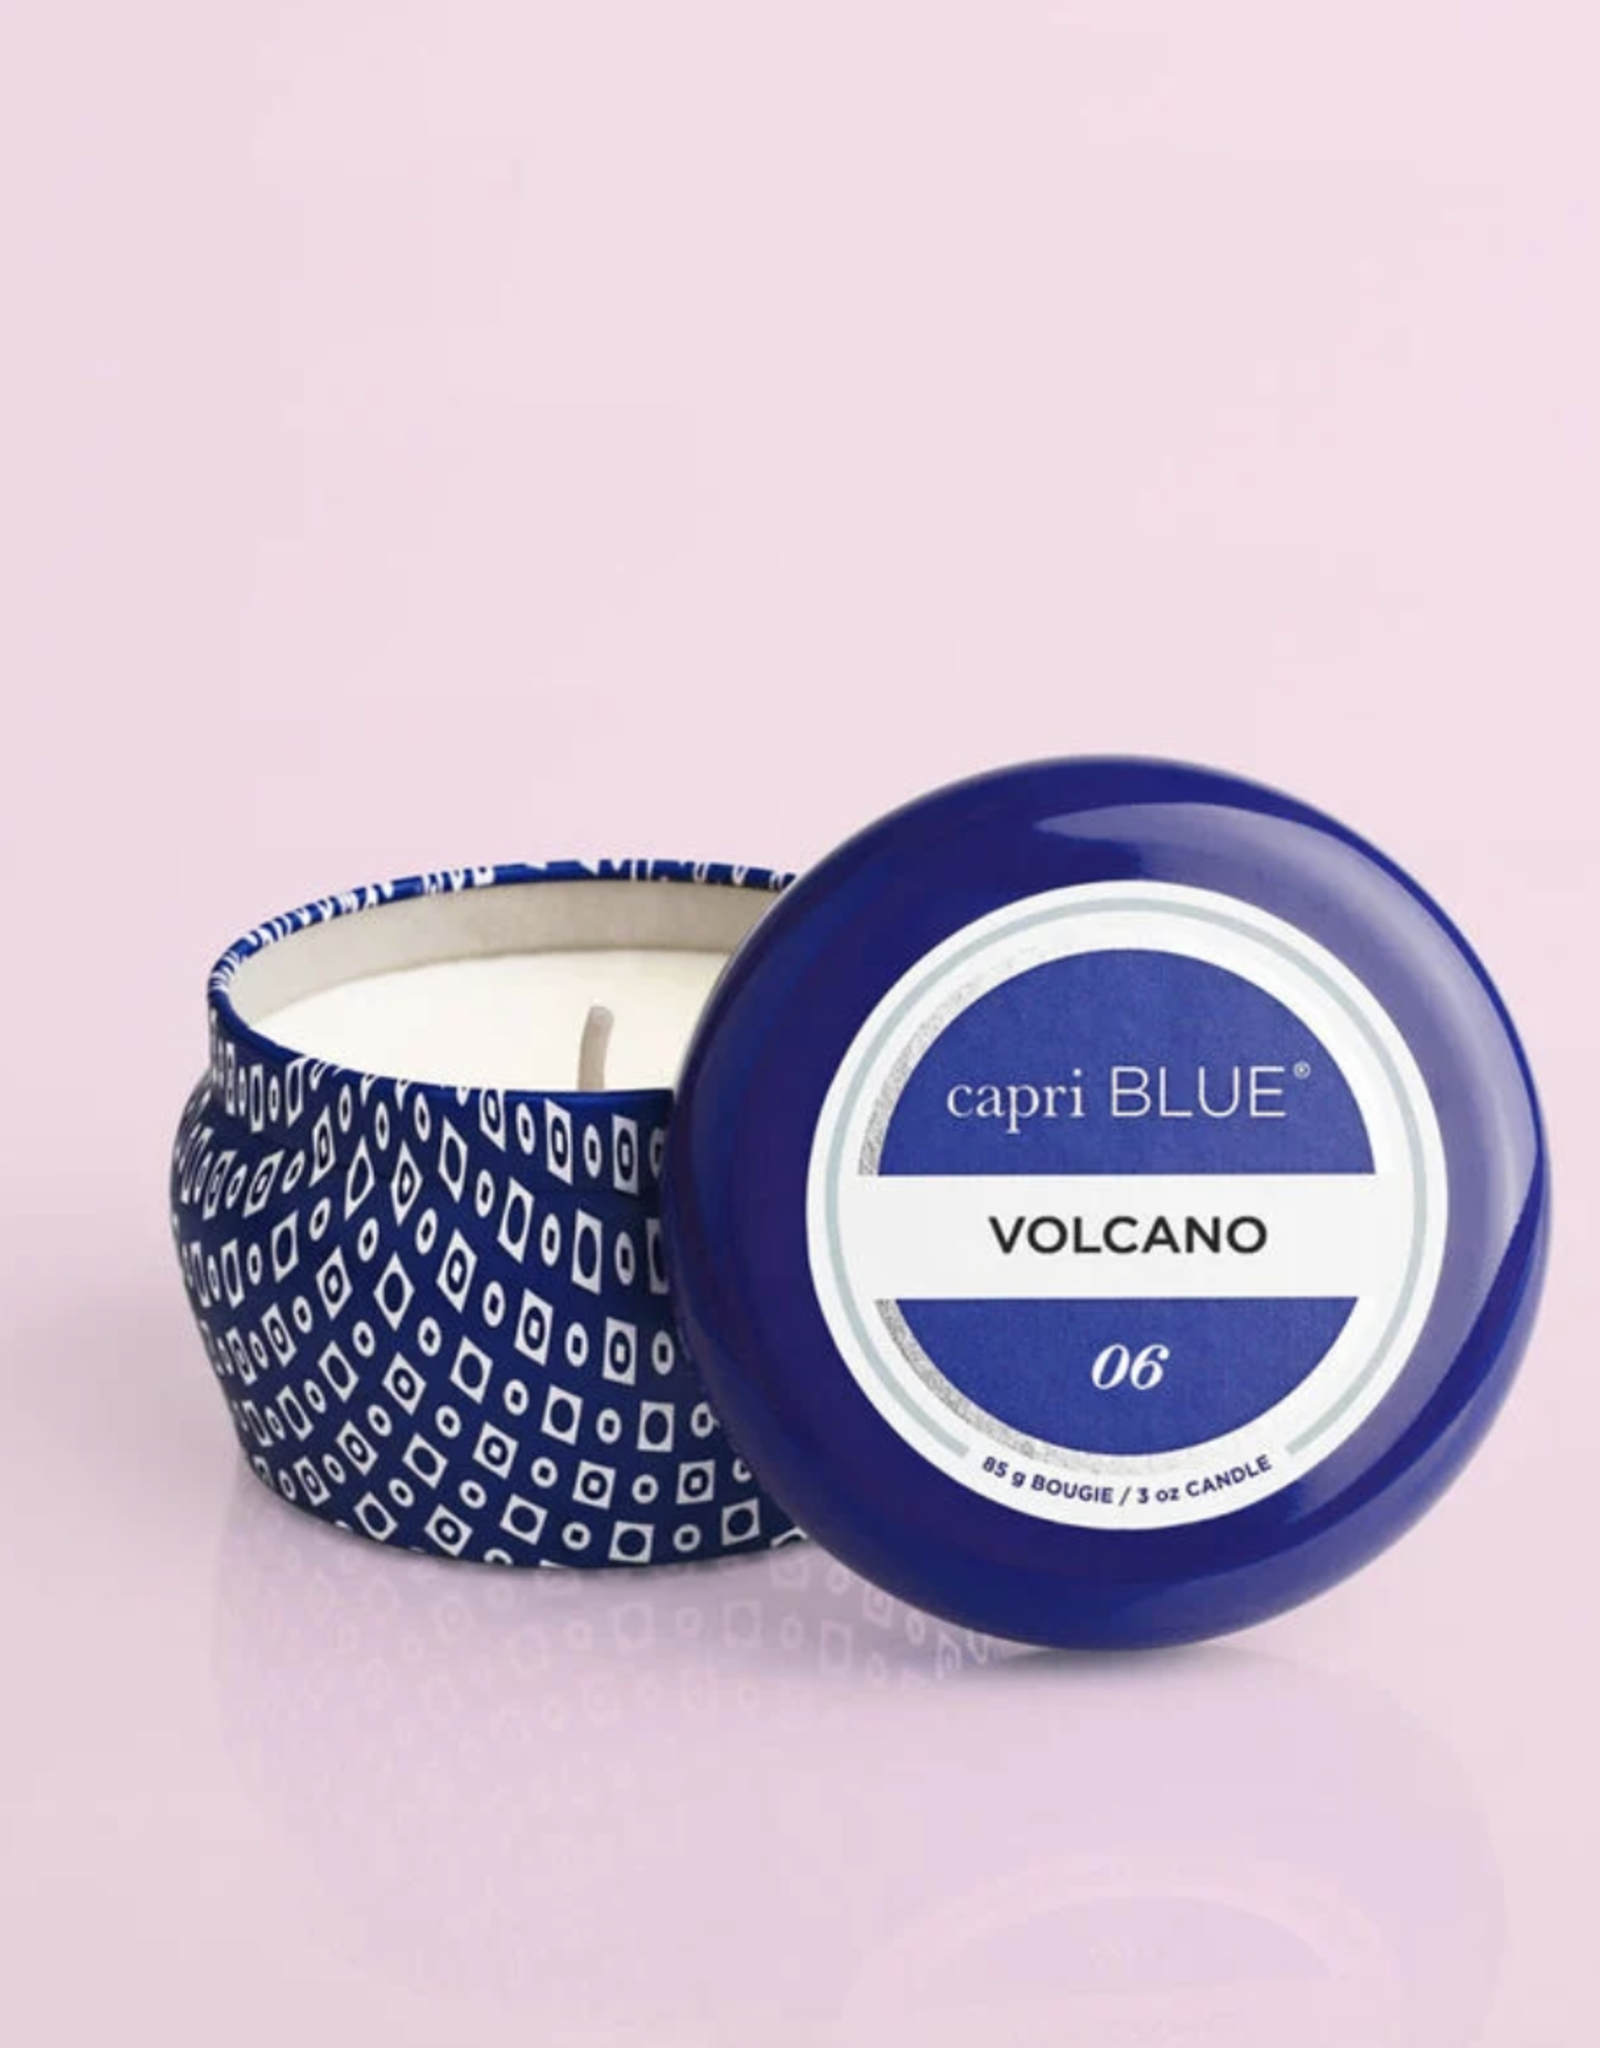 Capri Blue Mercury Iridescent Signature Jar Candle - 19 oz - Volcano